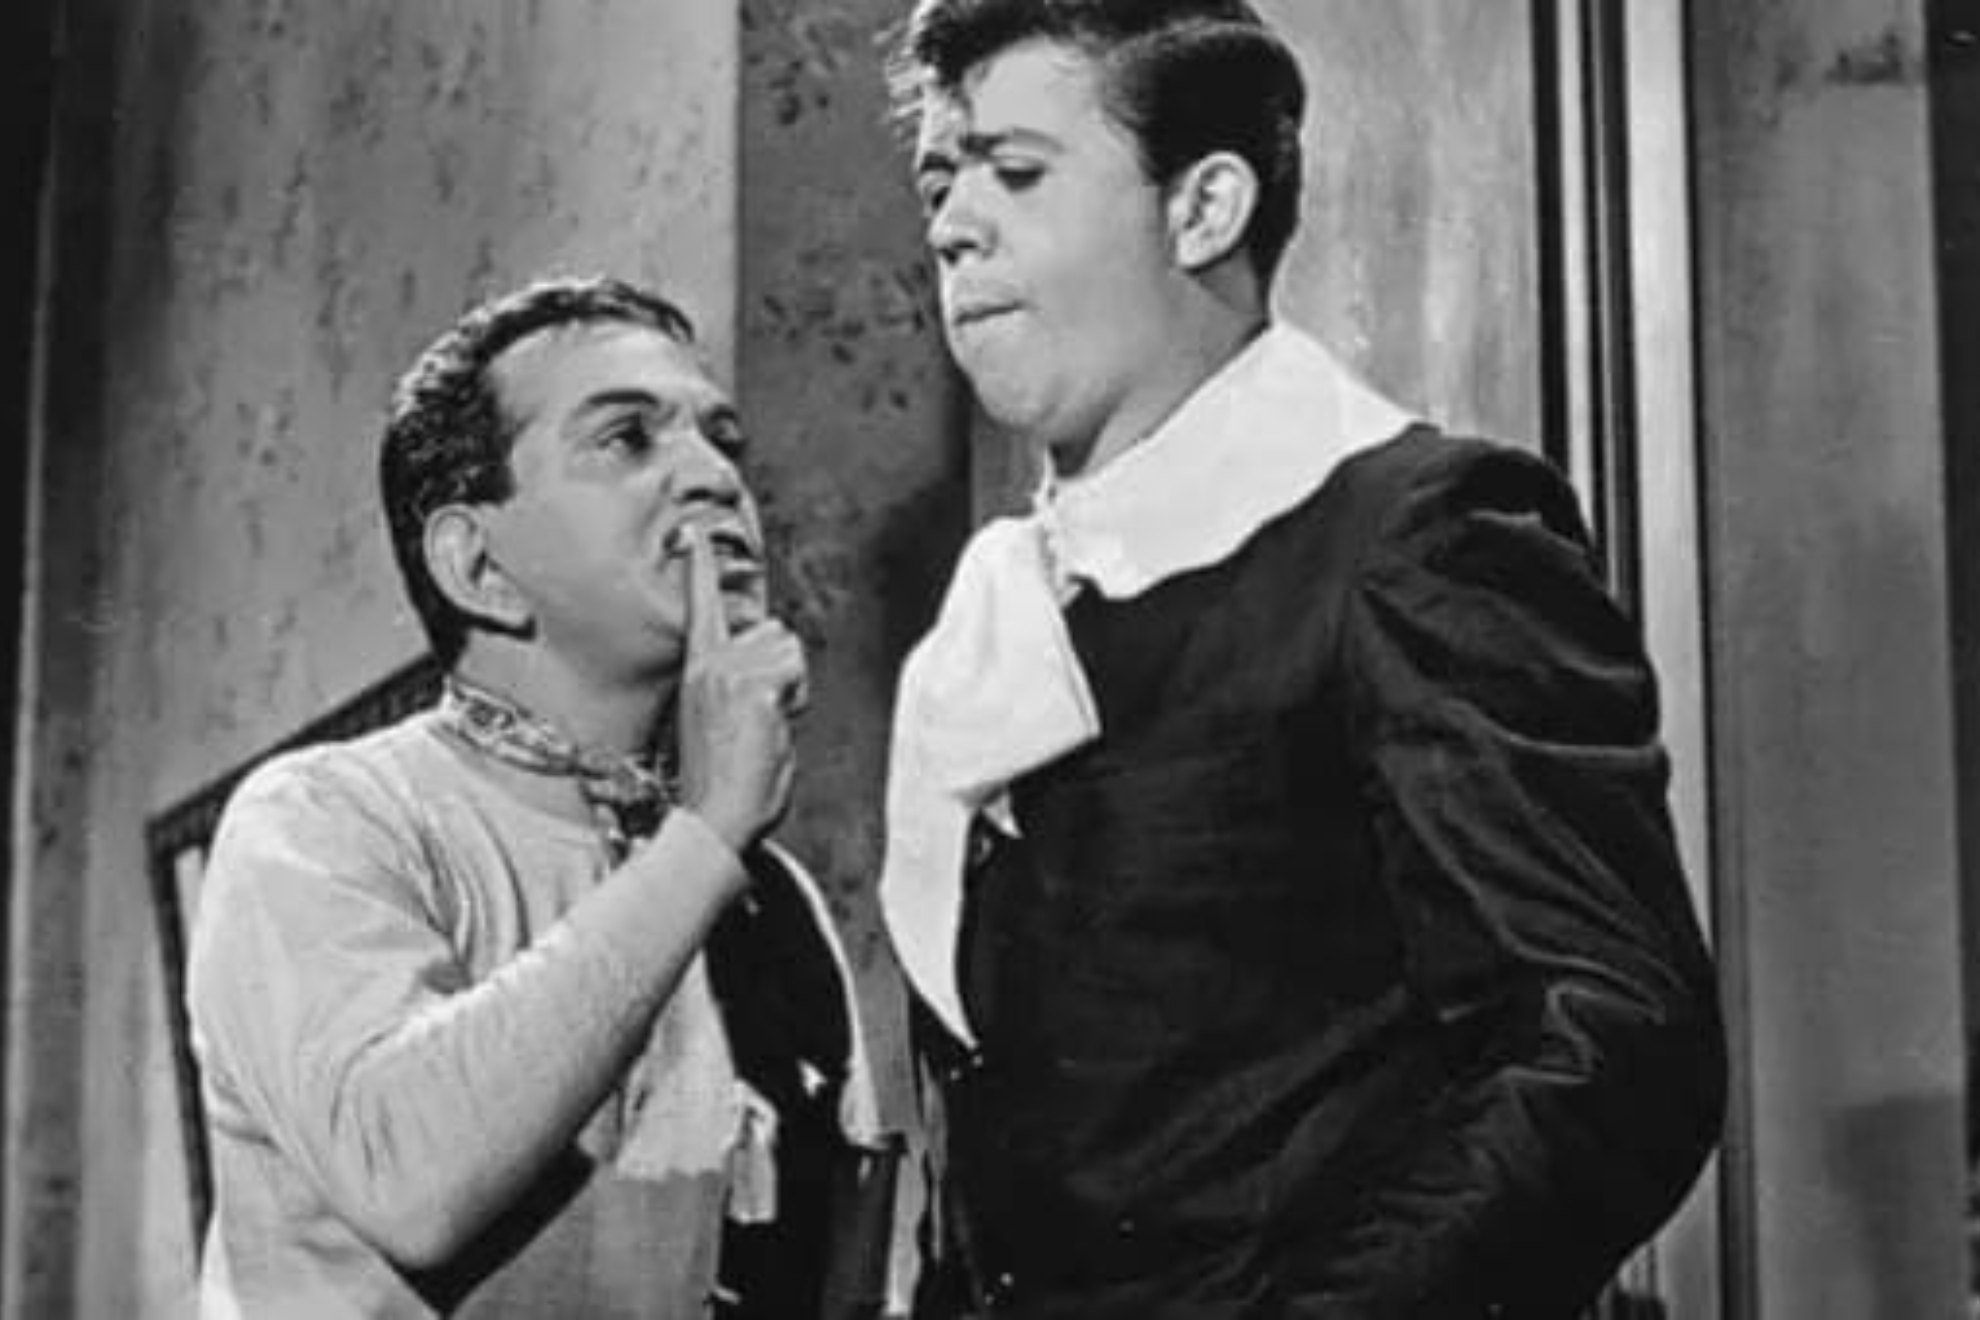 Cantinflas y Chabelo en "El extra" de 1962